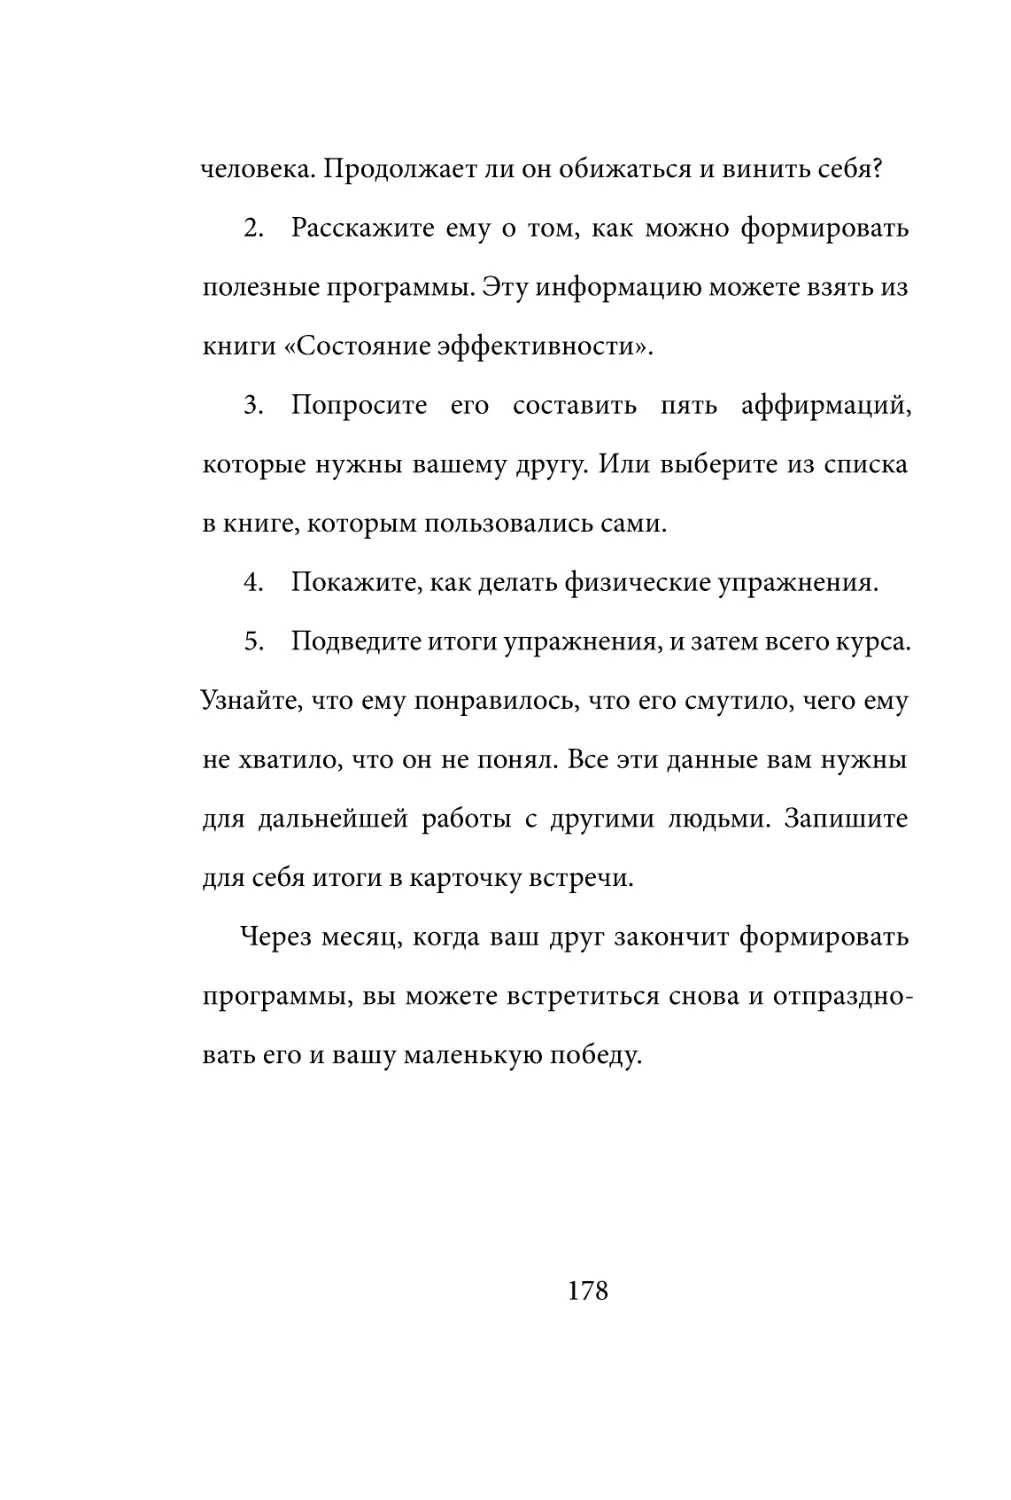 Sergey_Filippov_Dnevnik_samorazvitia_Evolyutsia_Vnutrennego_Sostoyania_178.pdf (p.178)